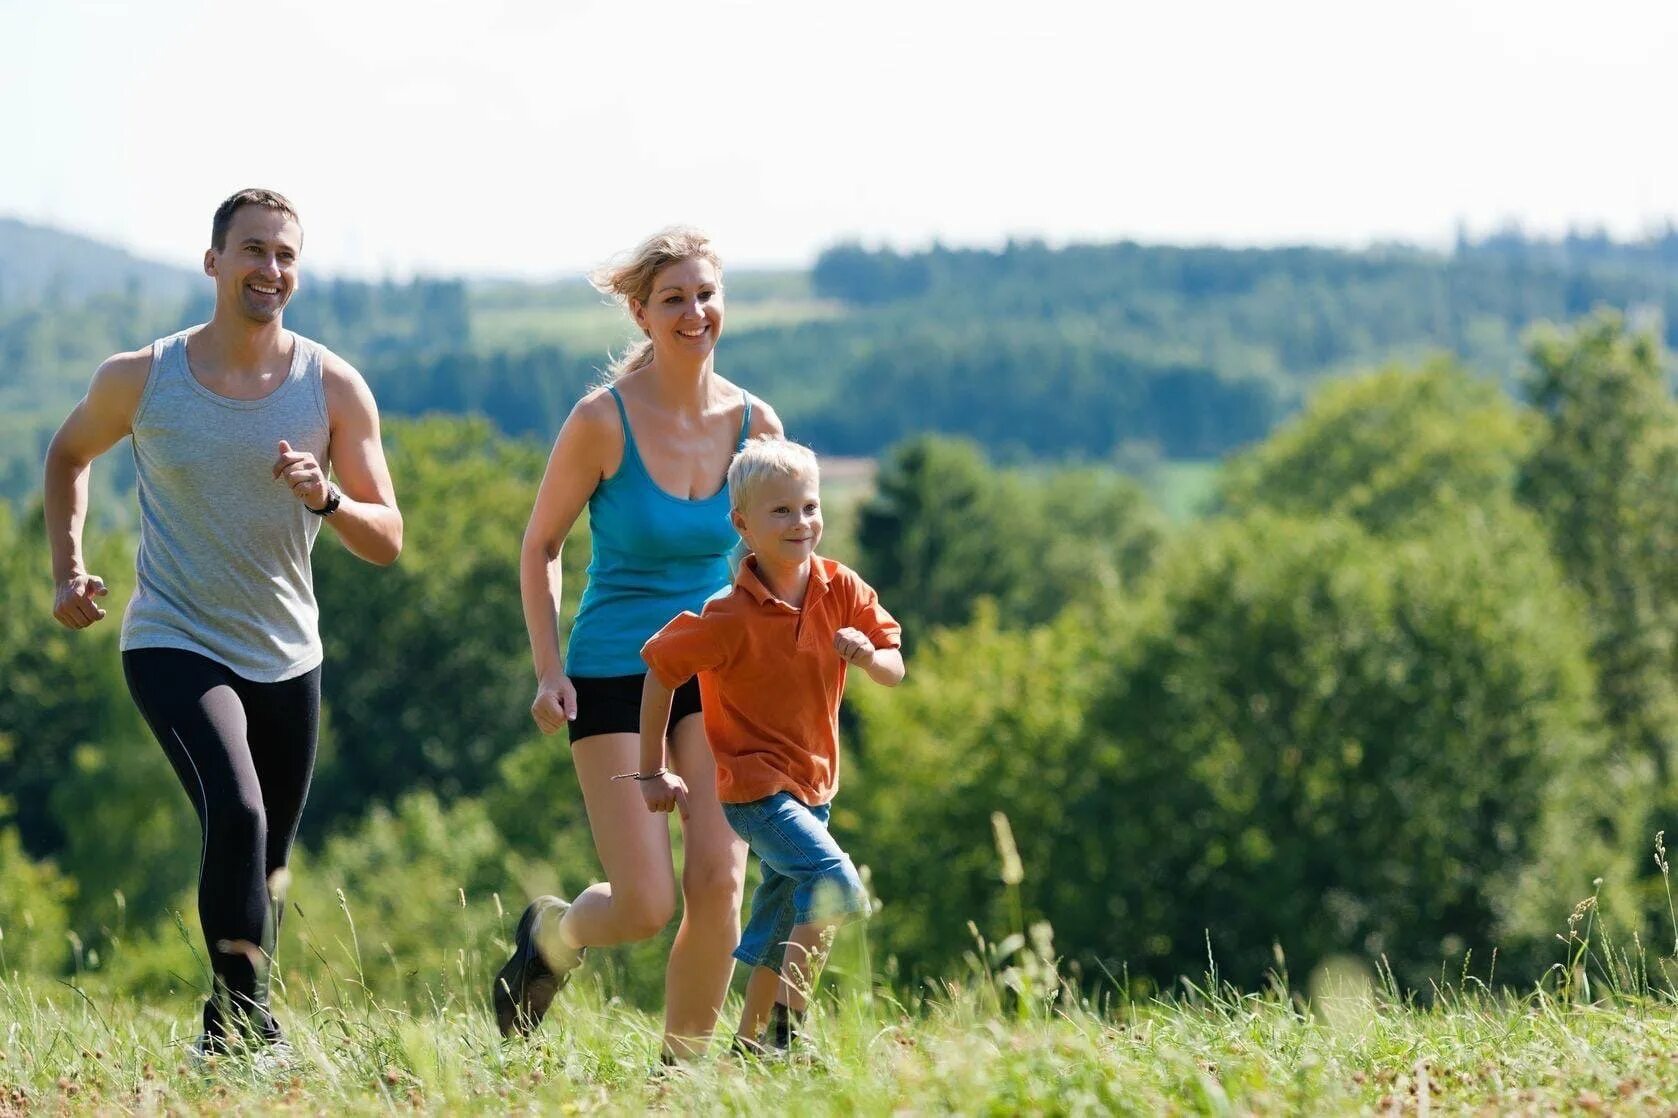 Показывай активность. Семья занимается спортом. Активный образ жизни. Занятие спортом на природе. Спорт на свежем воздухе.